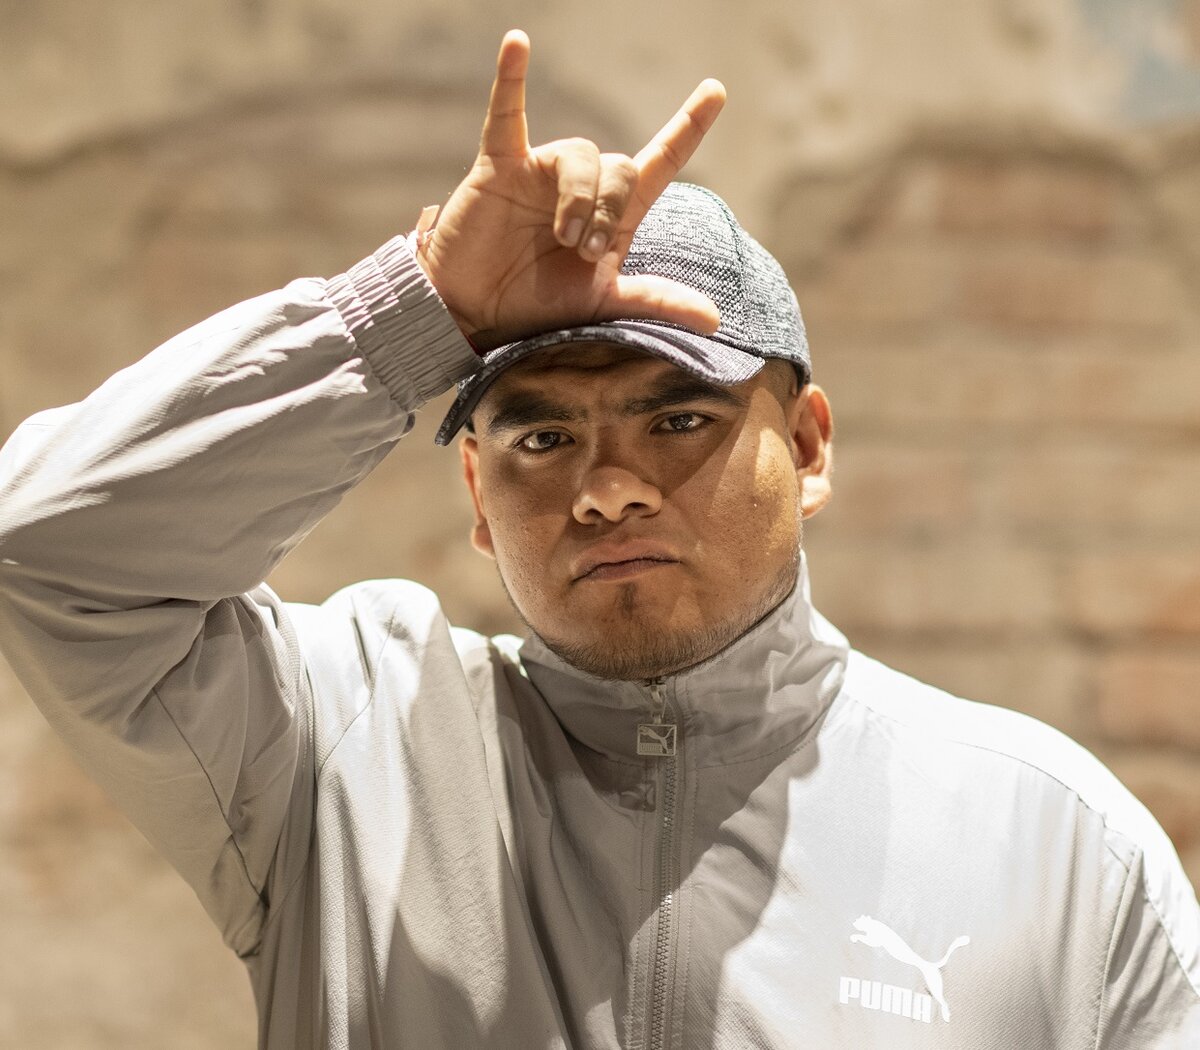 Aczino, el mejor freestylero jamás parido | Entrevista exclusiva al rapero emblema de la improvisación, que estrena proyecto hip hop | Página12